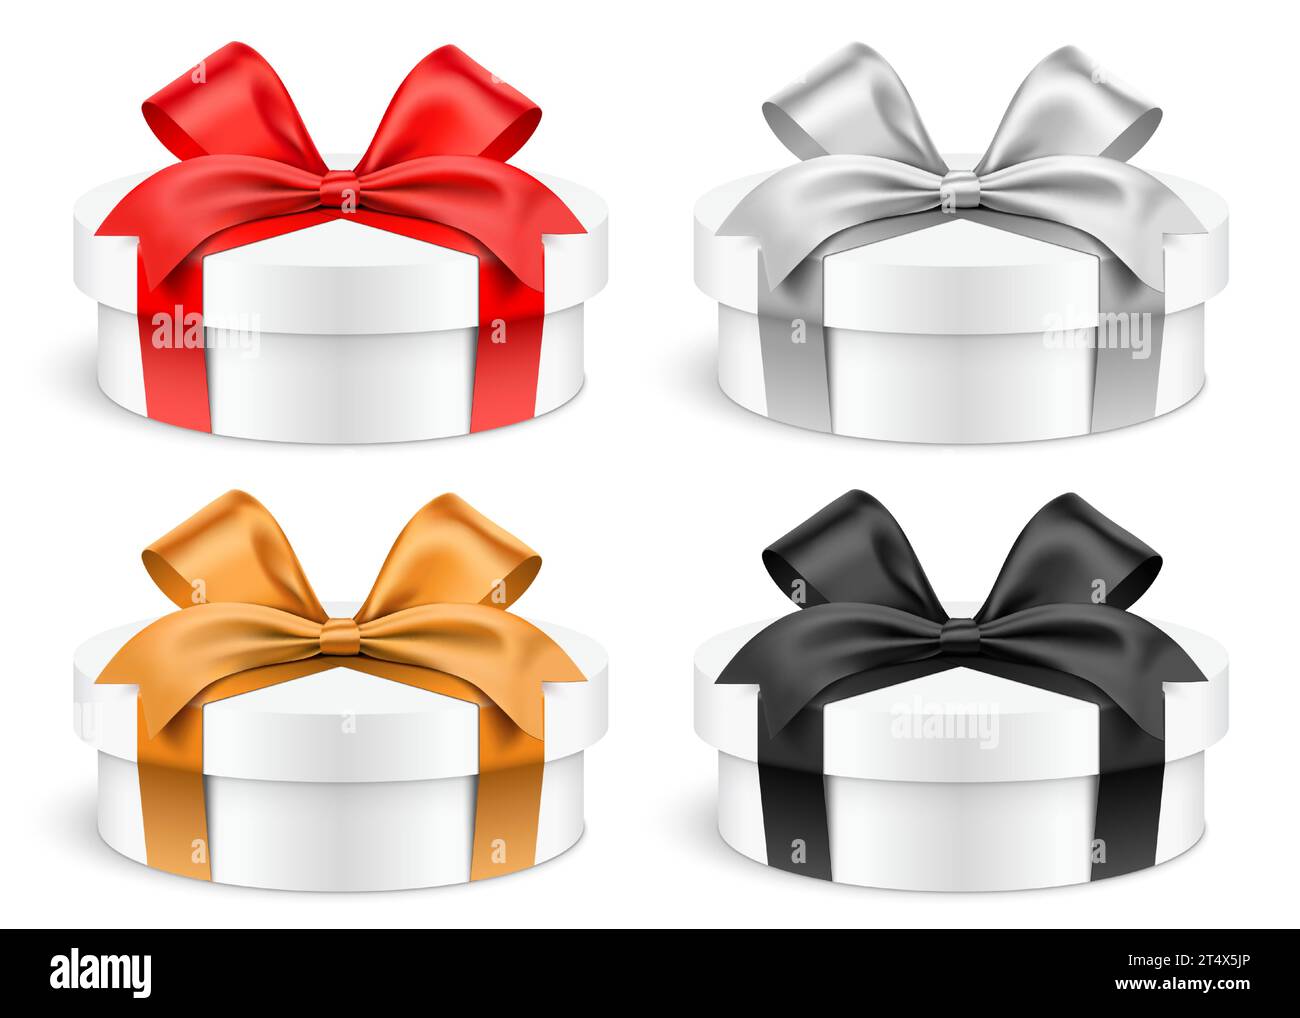 Boîtes cadeaux blanches de forme ronde de faible hauteur enveloppées de rubans de couleur rouge, argent, or et noir. Illustration vectorielle d'ensemble de boîte-cadeau cylindrique réaliste, isolé sur fond blanc. Illustration de Vecteur